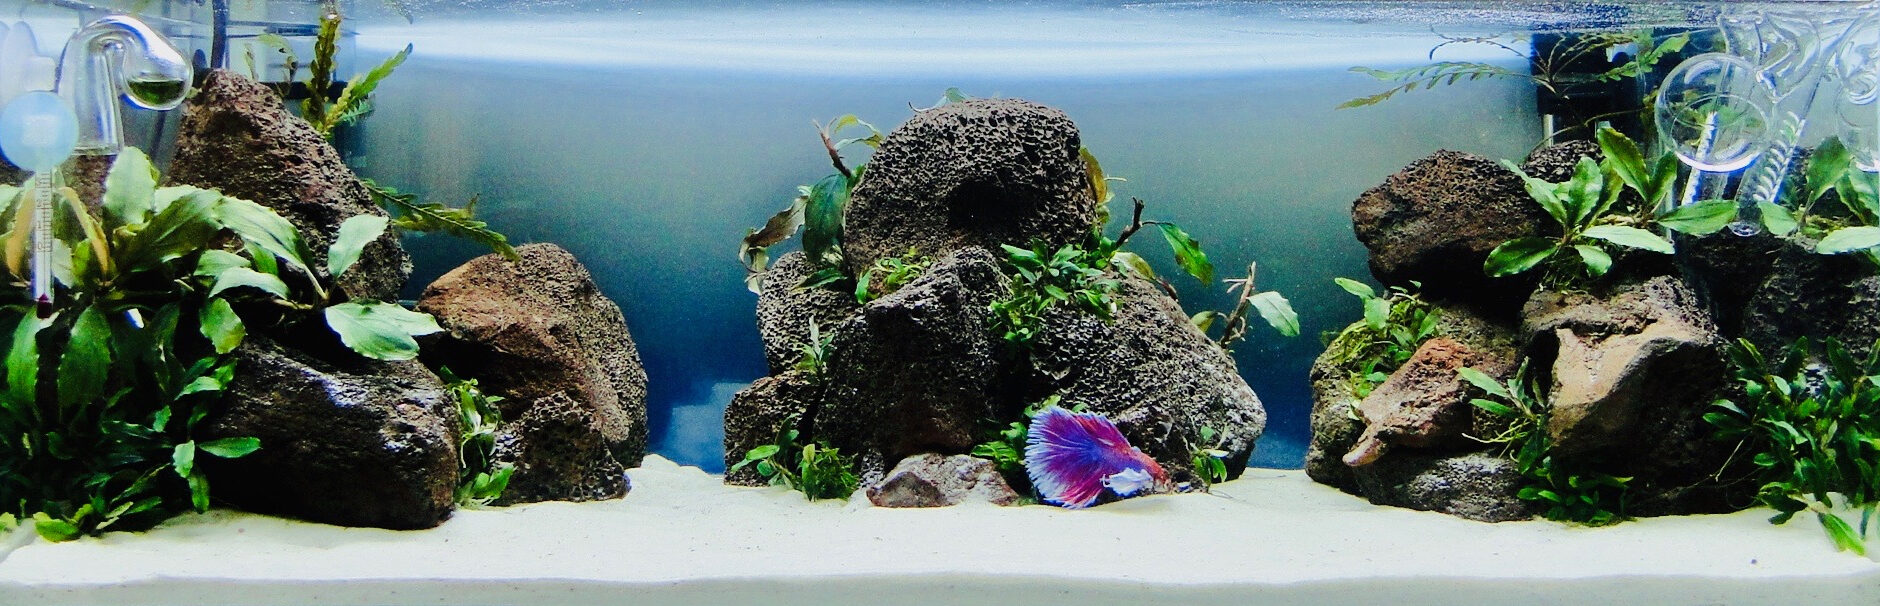 Маленький аквариум и рыбка петушок. Особенности оформления - DECOTOP.RU